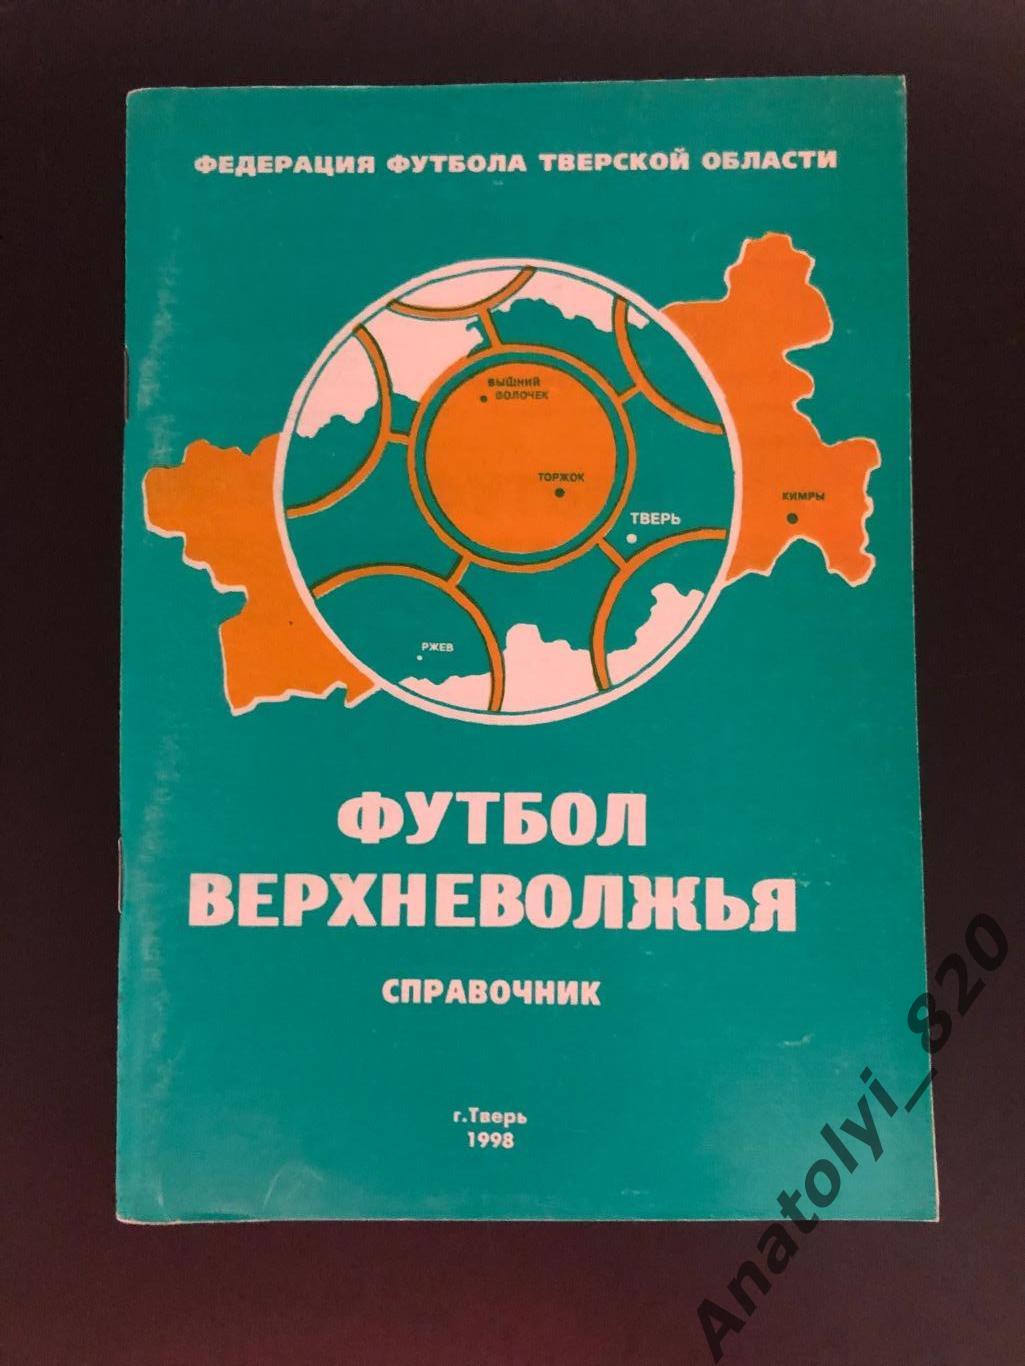 Тверь 1998 год справочник «Футбол Верхневолжья»